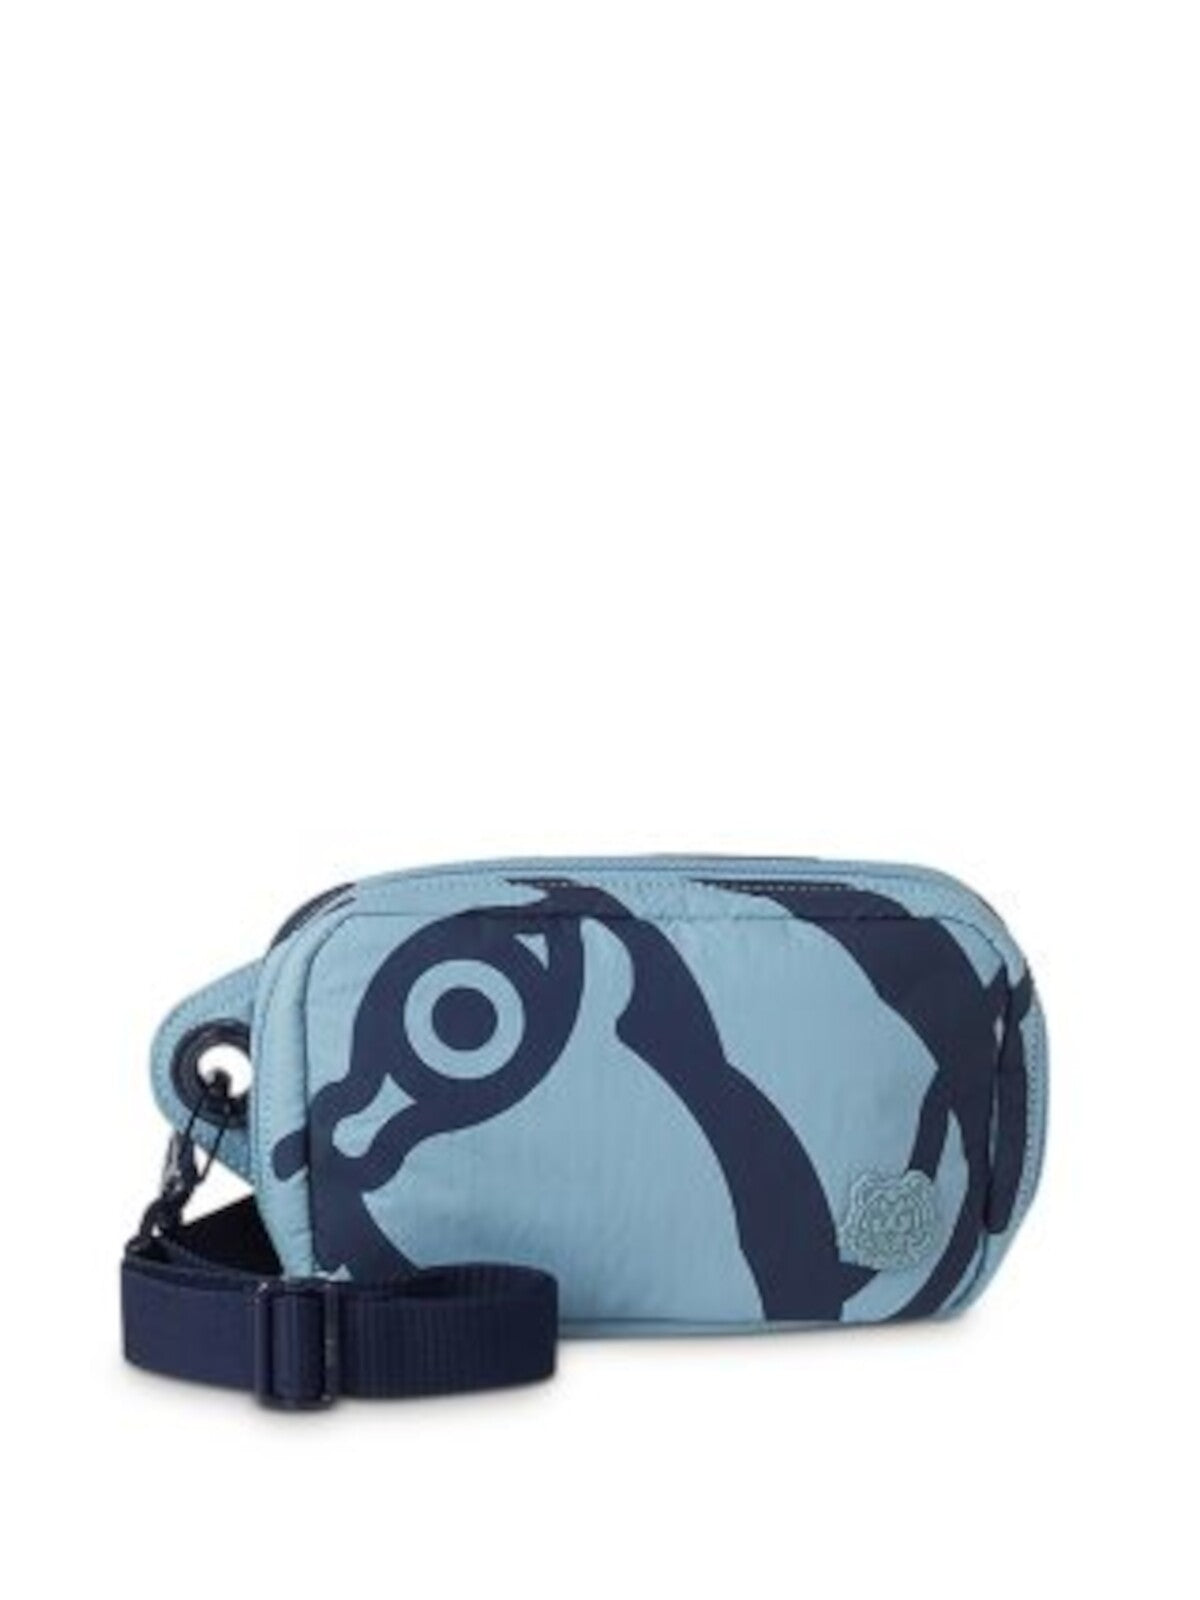 KENZO Women's Light Blue Tiger Lined Card Slots, Logo Graphic Adjustable Strap Belt Bag Purse